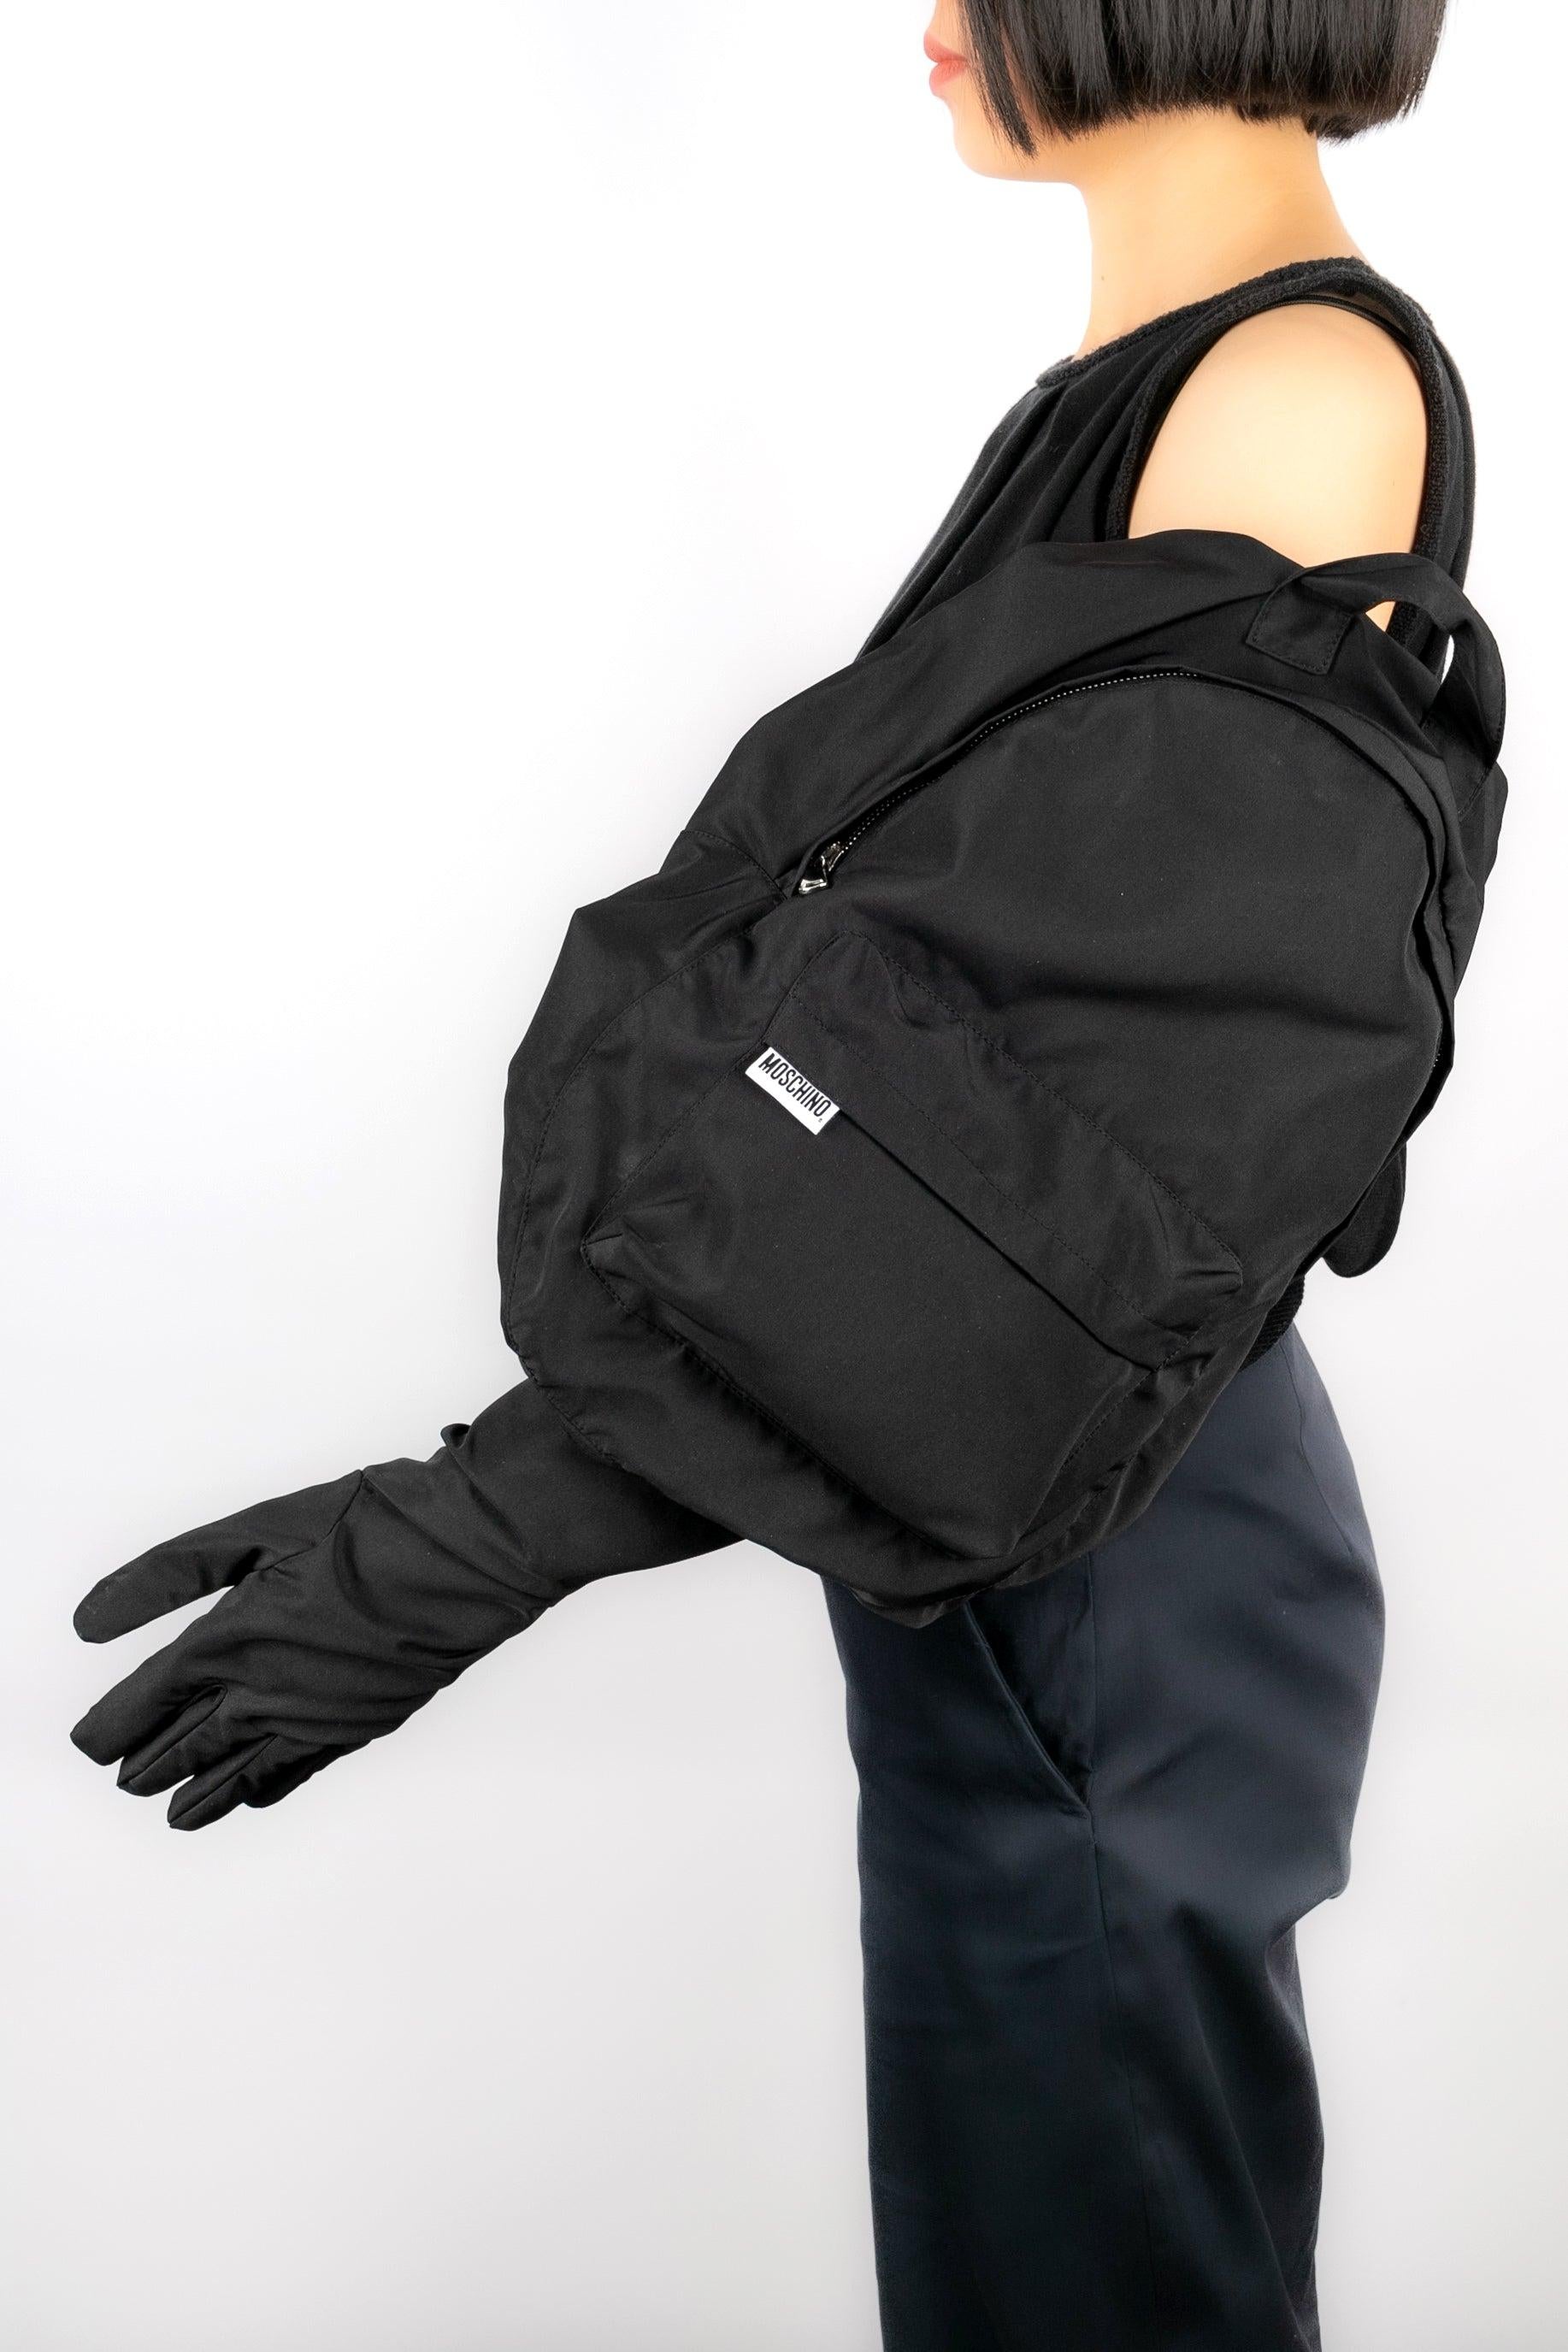 Moschino - (Made in Italy) Longs gants en toile noire peu communs pouvant également être portés comme un sac zippé.

Informations complémentaires : 
Condit : Très bon état.
Dimensions : Hauteur : 72 cm

Référence du vendeur : ACC27